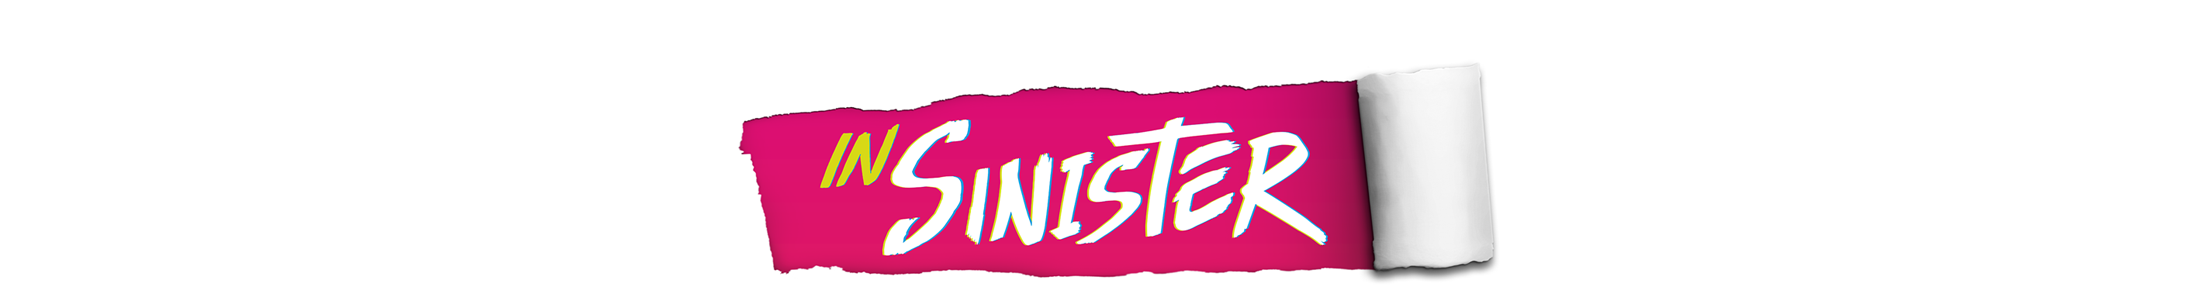 INSinister .'s profile banner